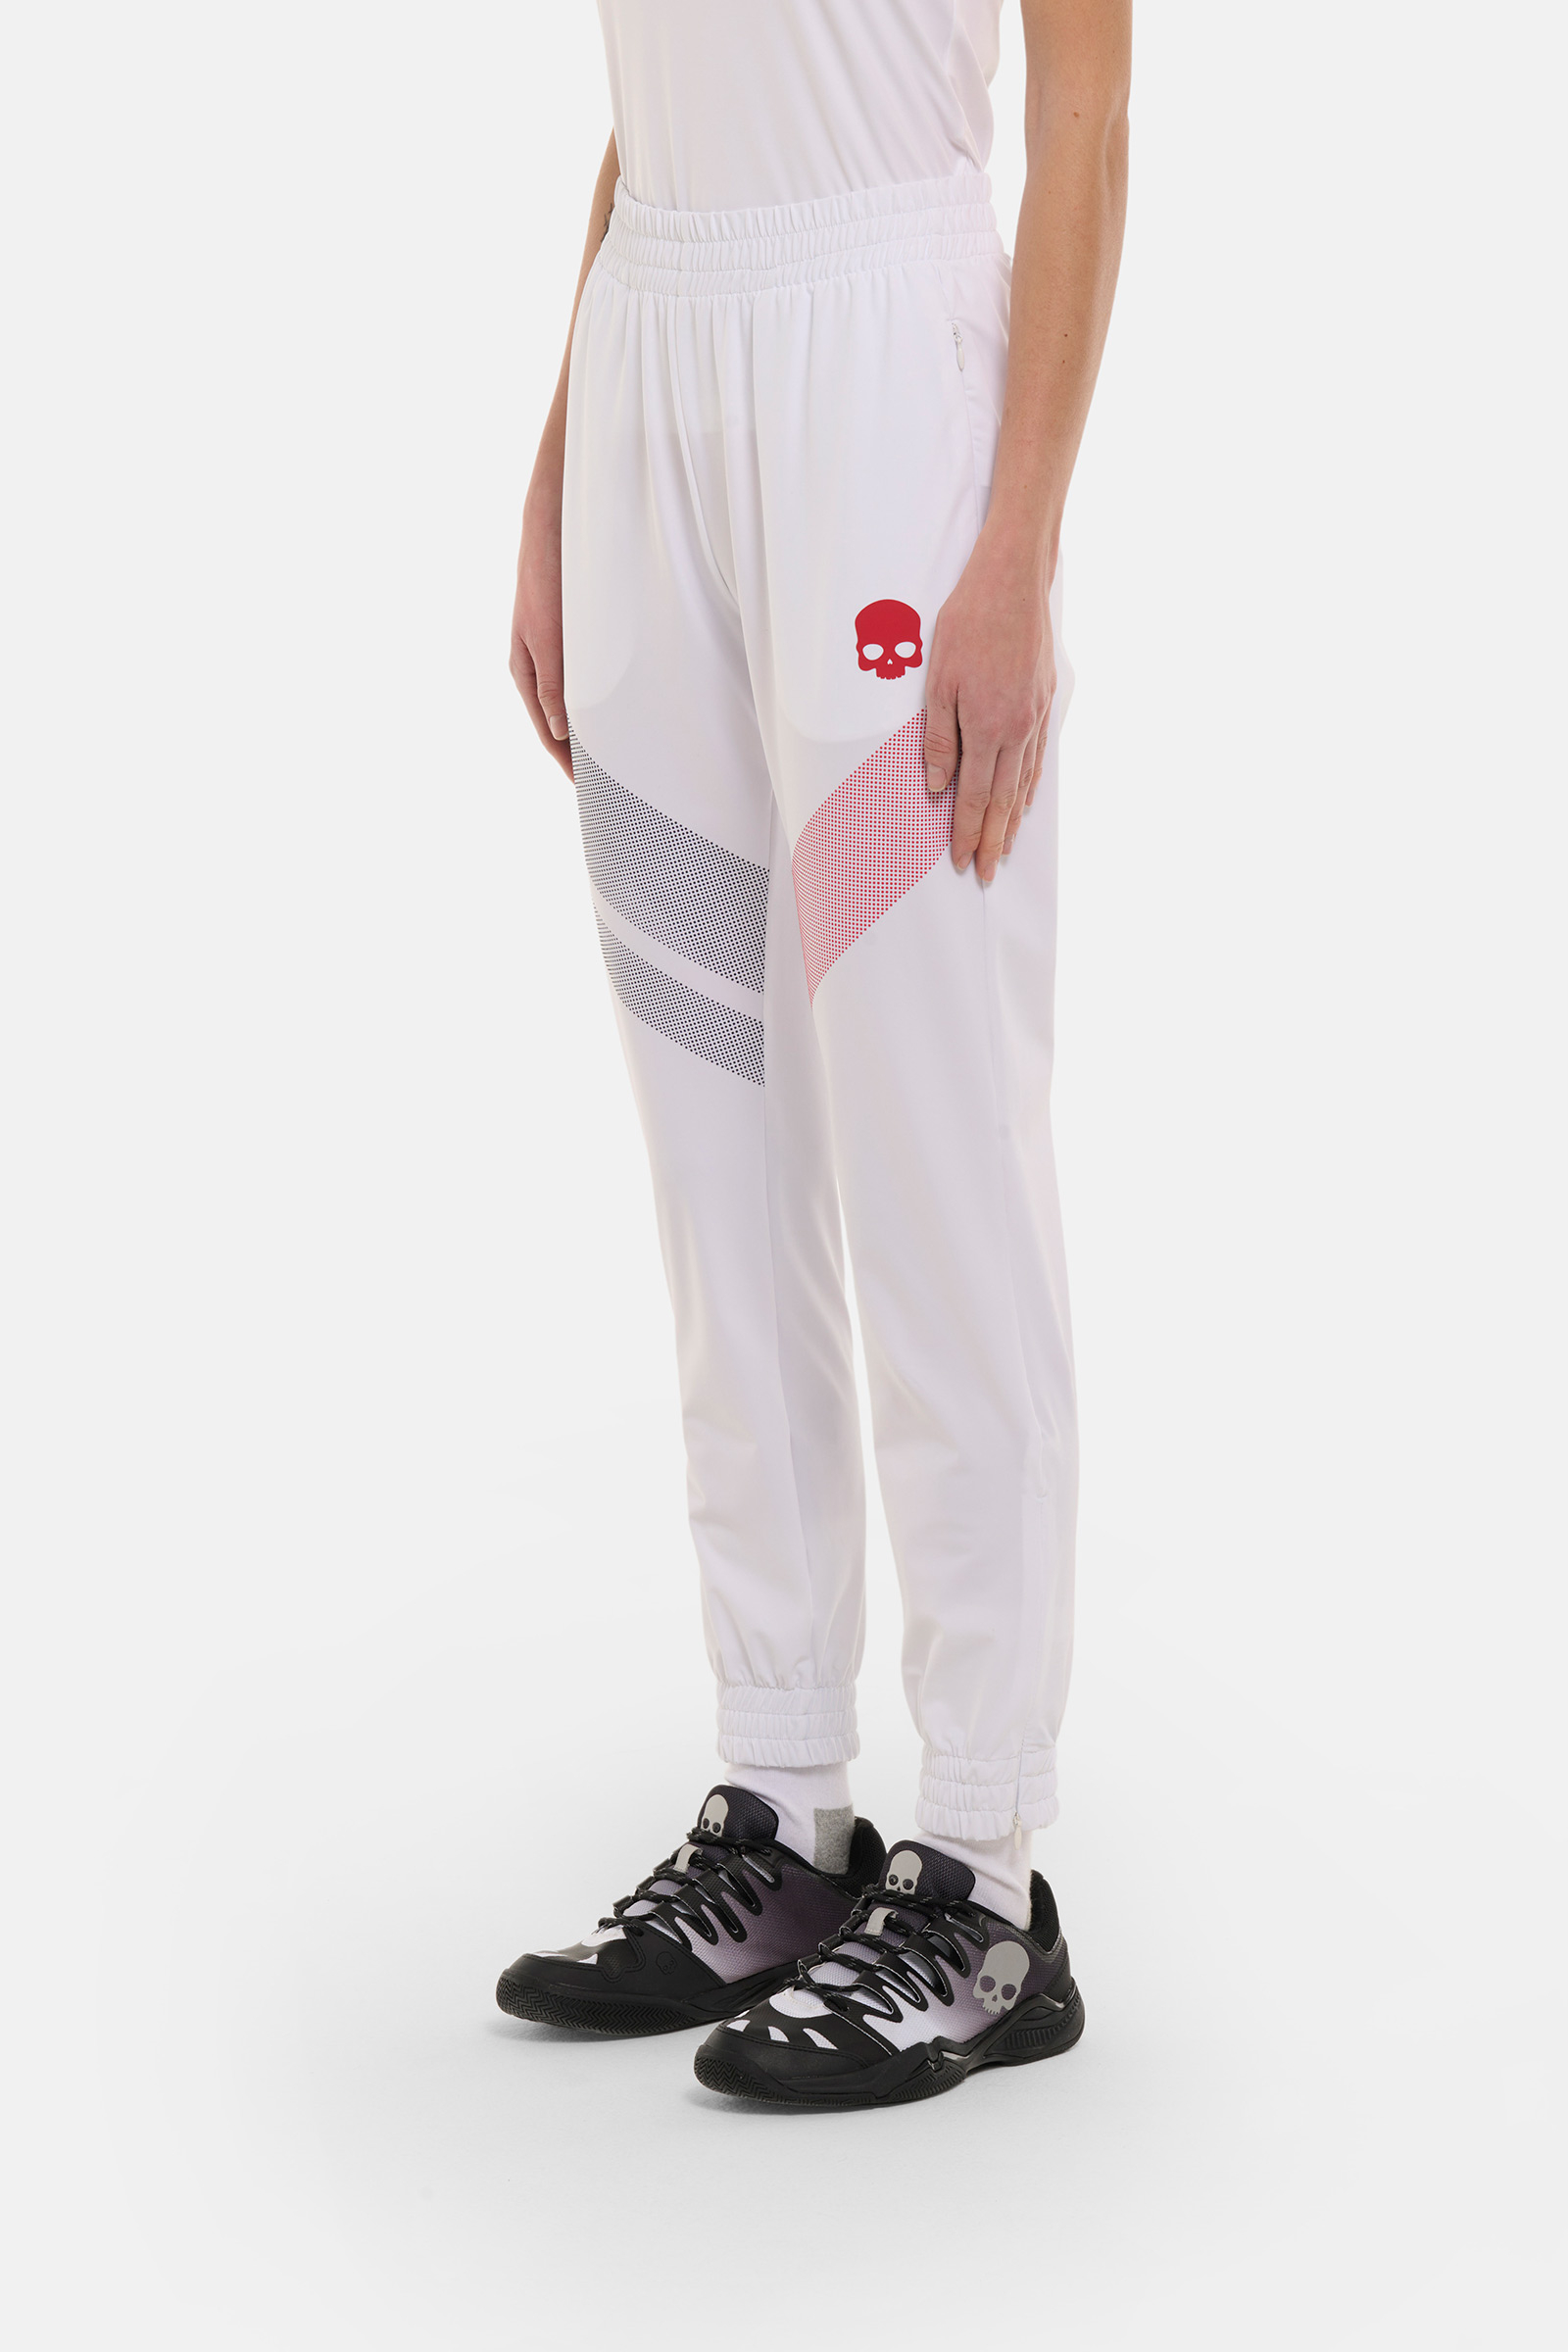 SPORT STRIPES TECH PANTS - WHITE - Hydrogen - Luxury Sportwear